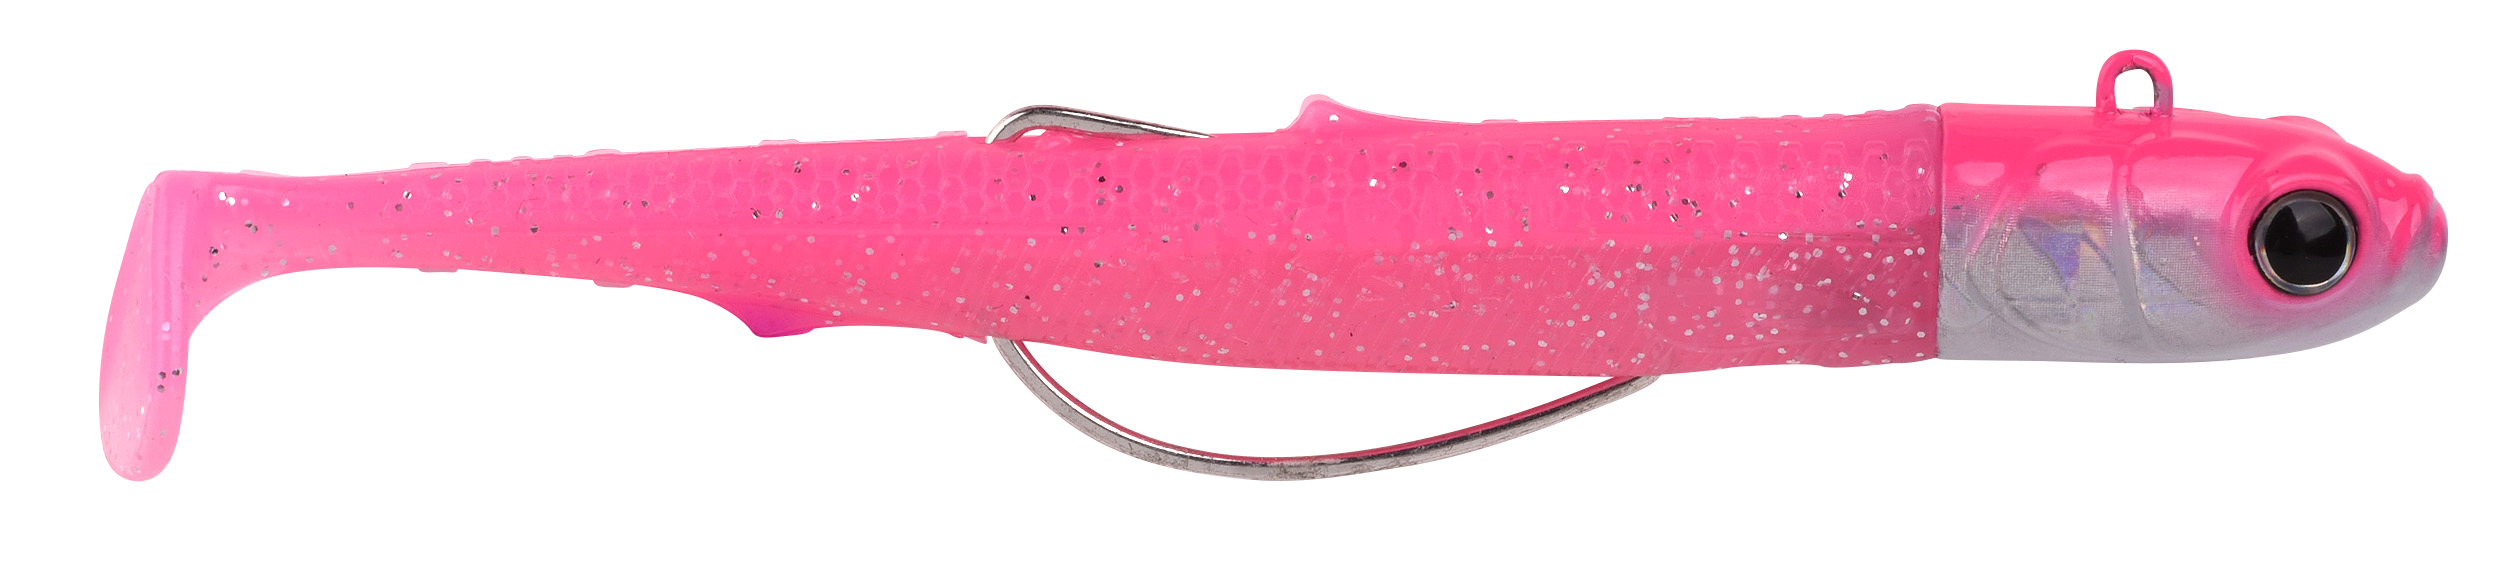 Spro Gutsbait Salt Meeres Softbait 8cm (7g) - Pink Minnow